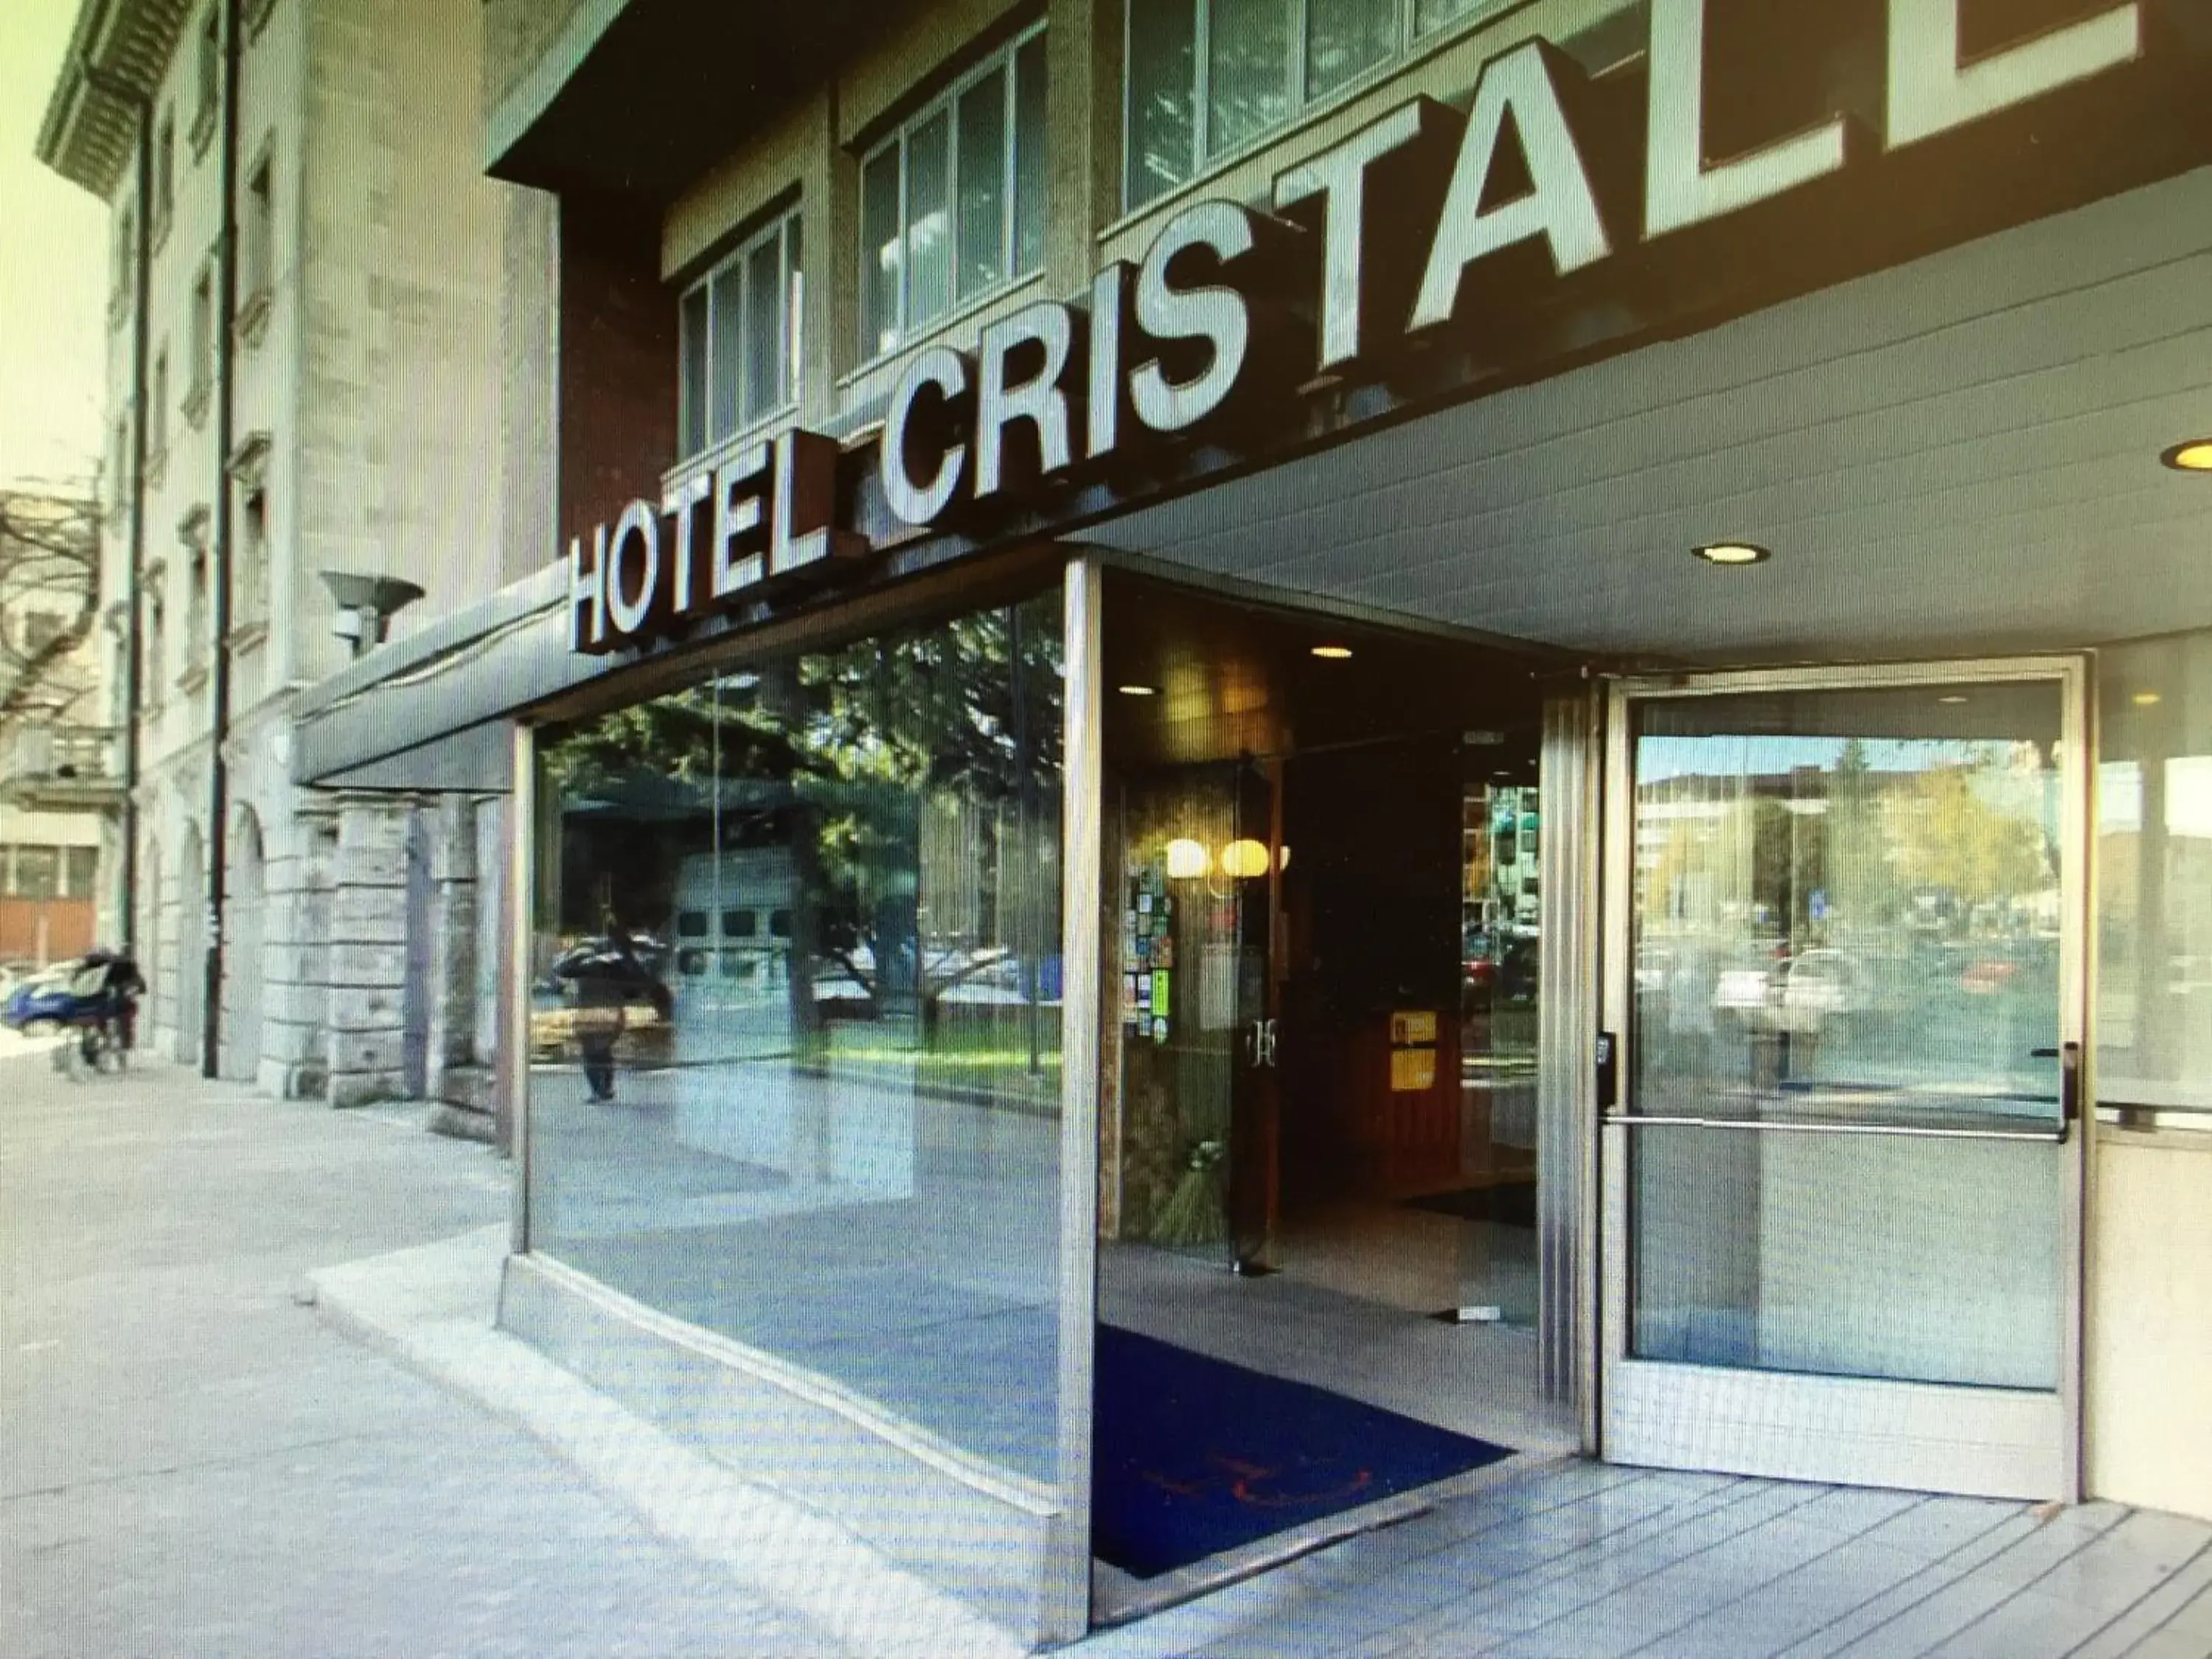 Facade/Entrance in Hotel Cristallo